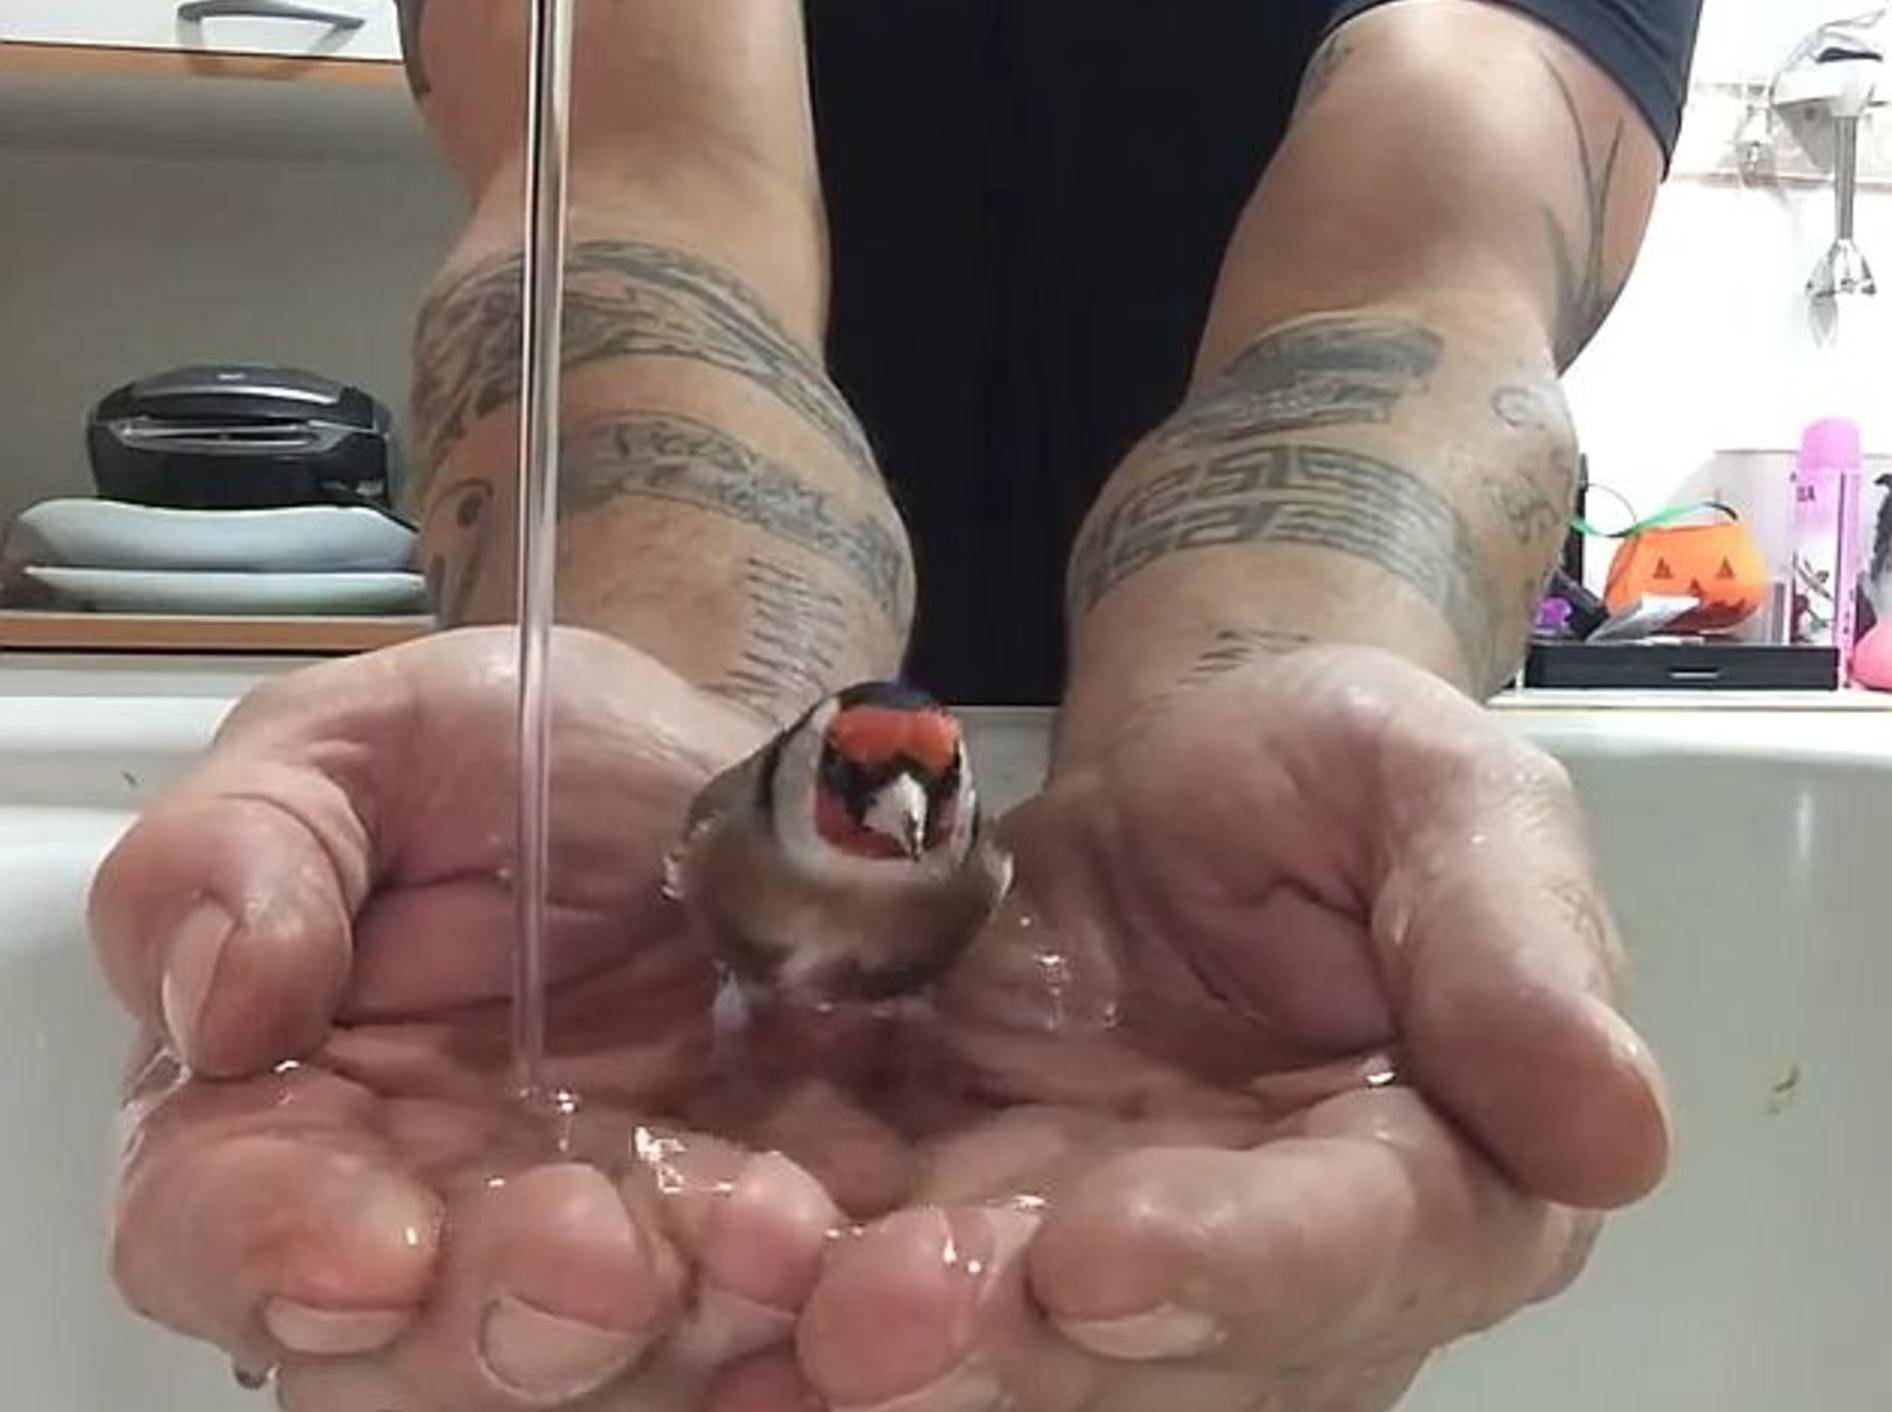 Kleiner Vogel nimmt ein süßes Bad – Bild: Youtube / Canal de rrafa13